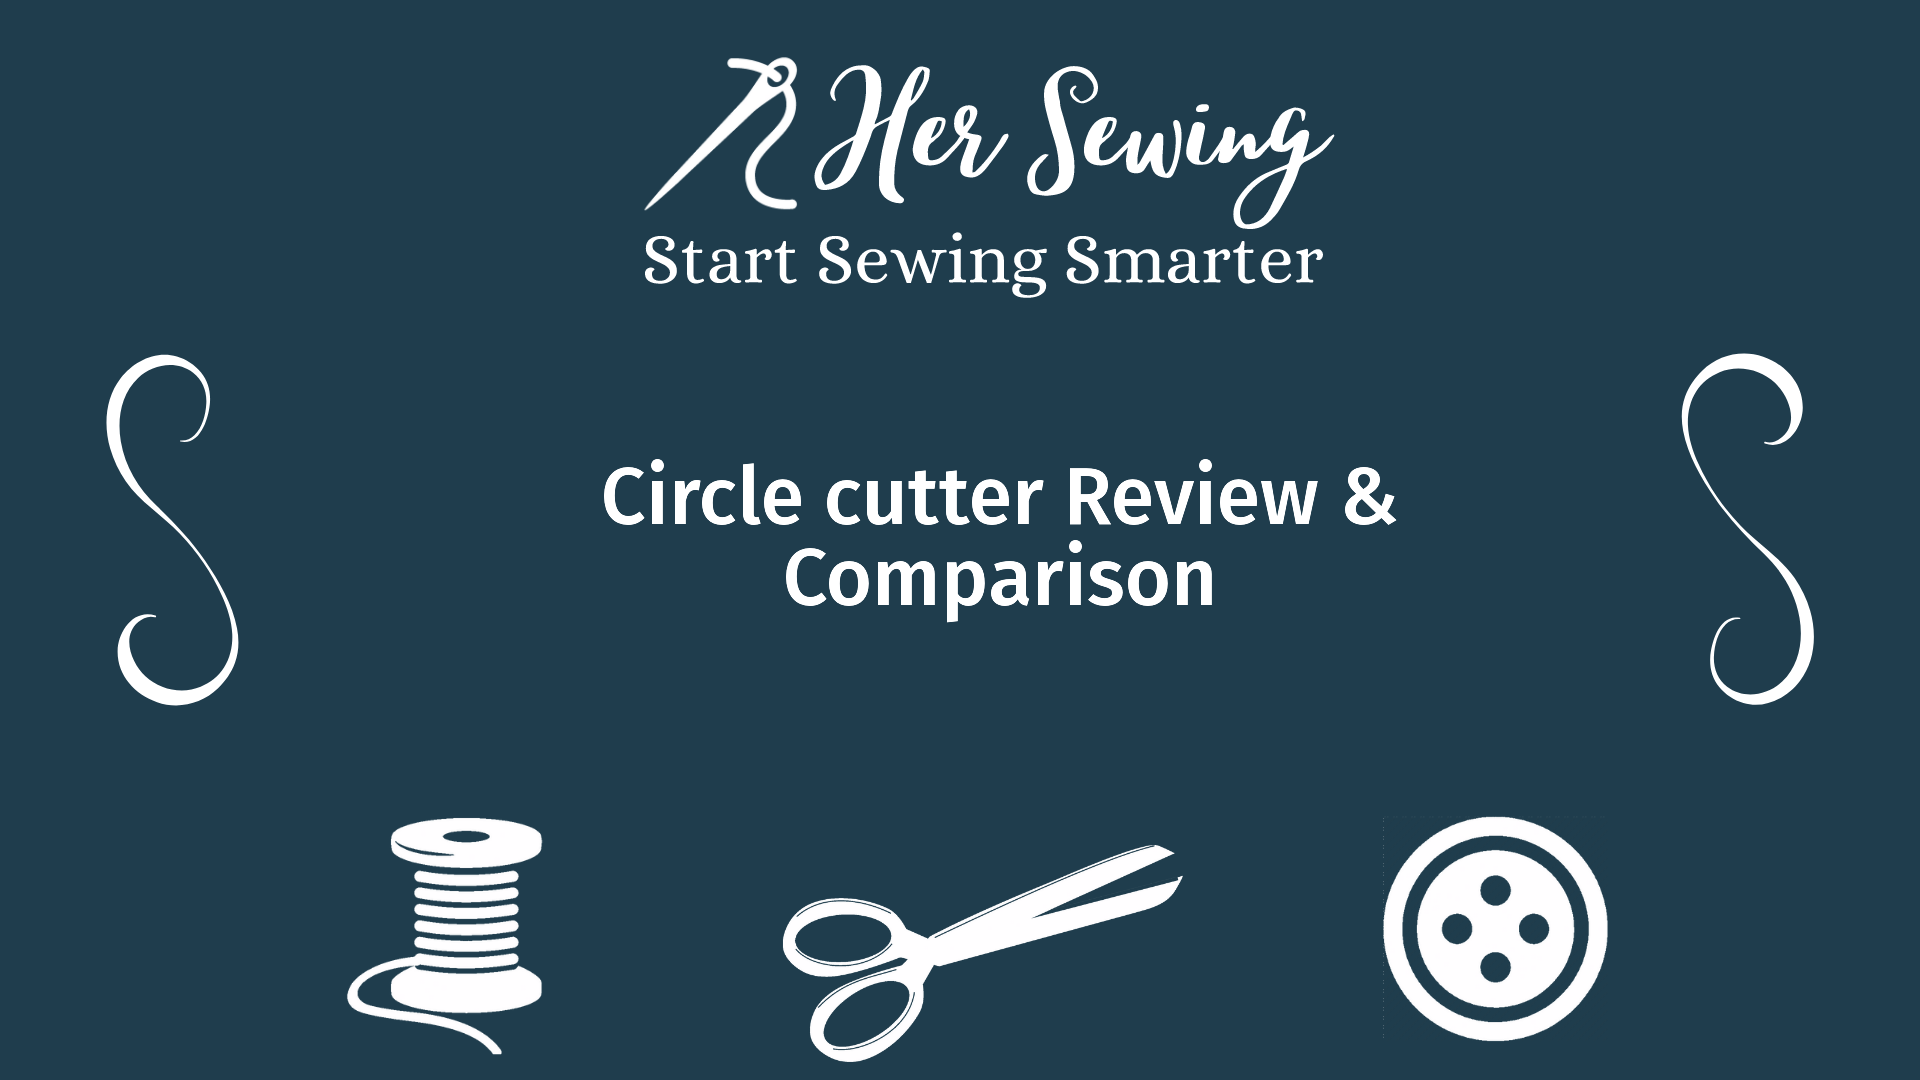 Circle cutter Review & Comparison